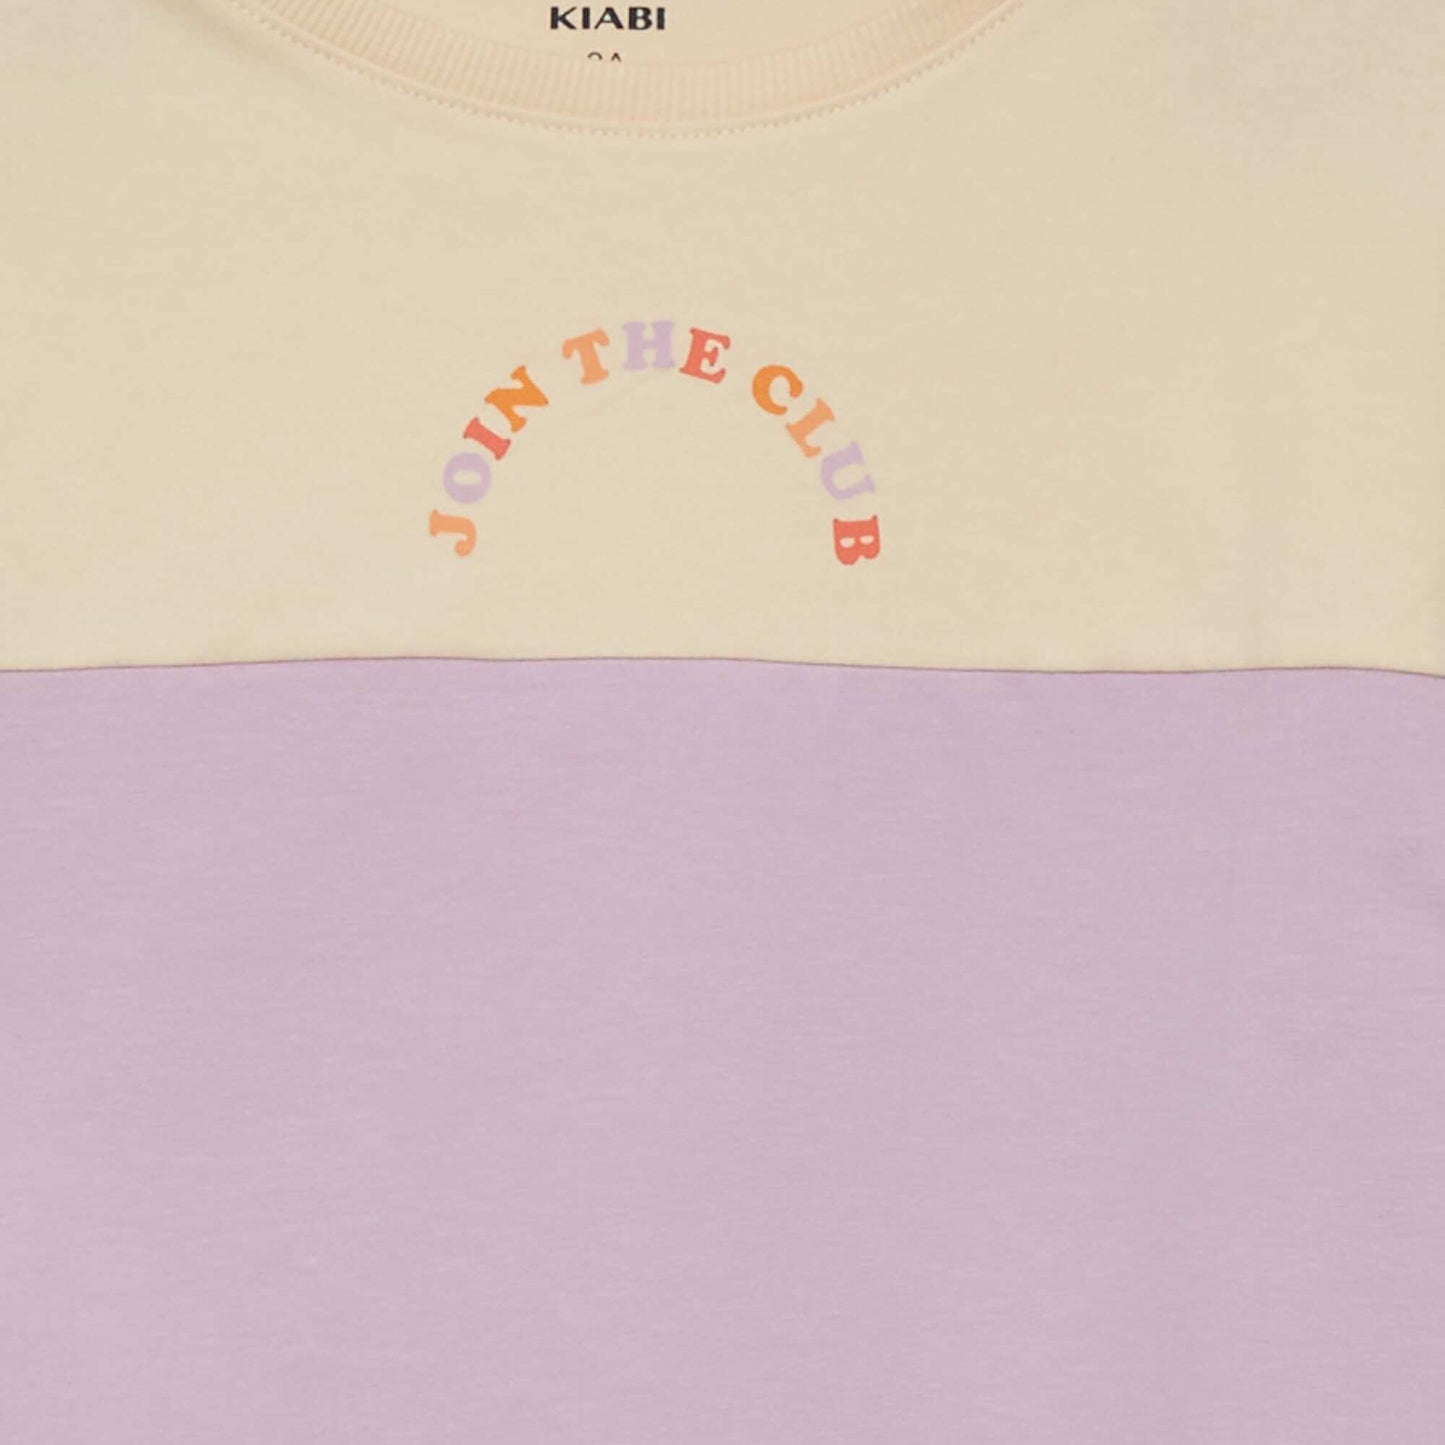 Tee-shirt crop top imprim Beige/violet